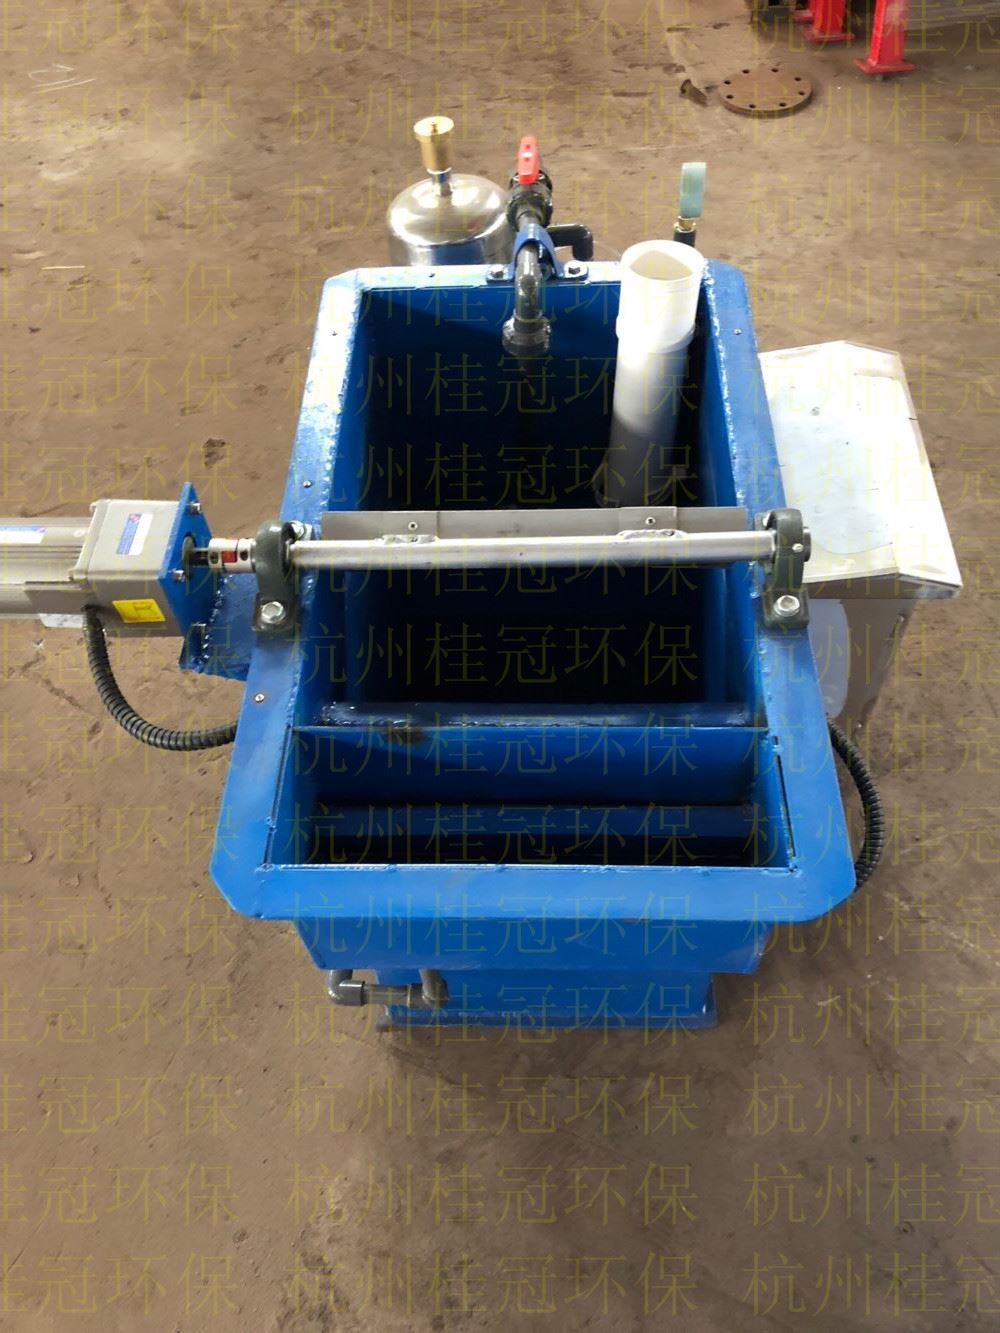 微纳米曝气机是专门针对河道办理开发的一套河溶解氧修改设备